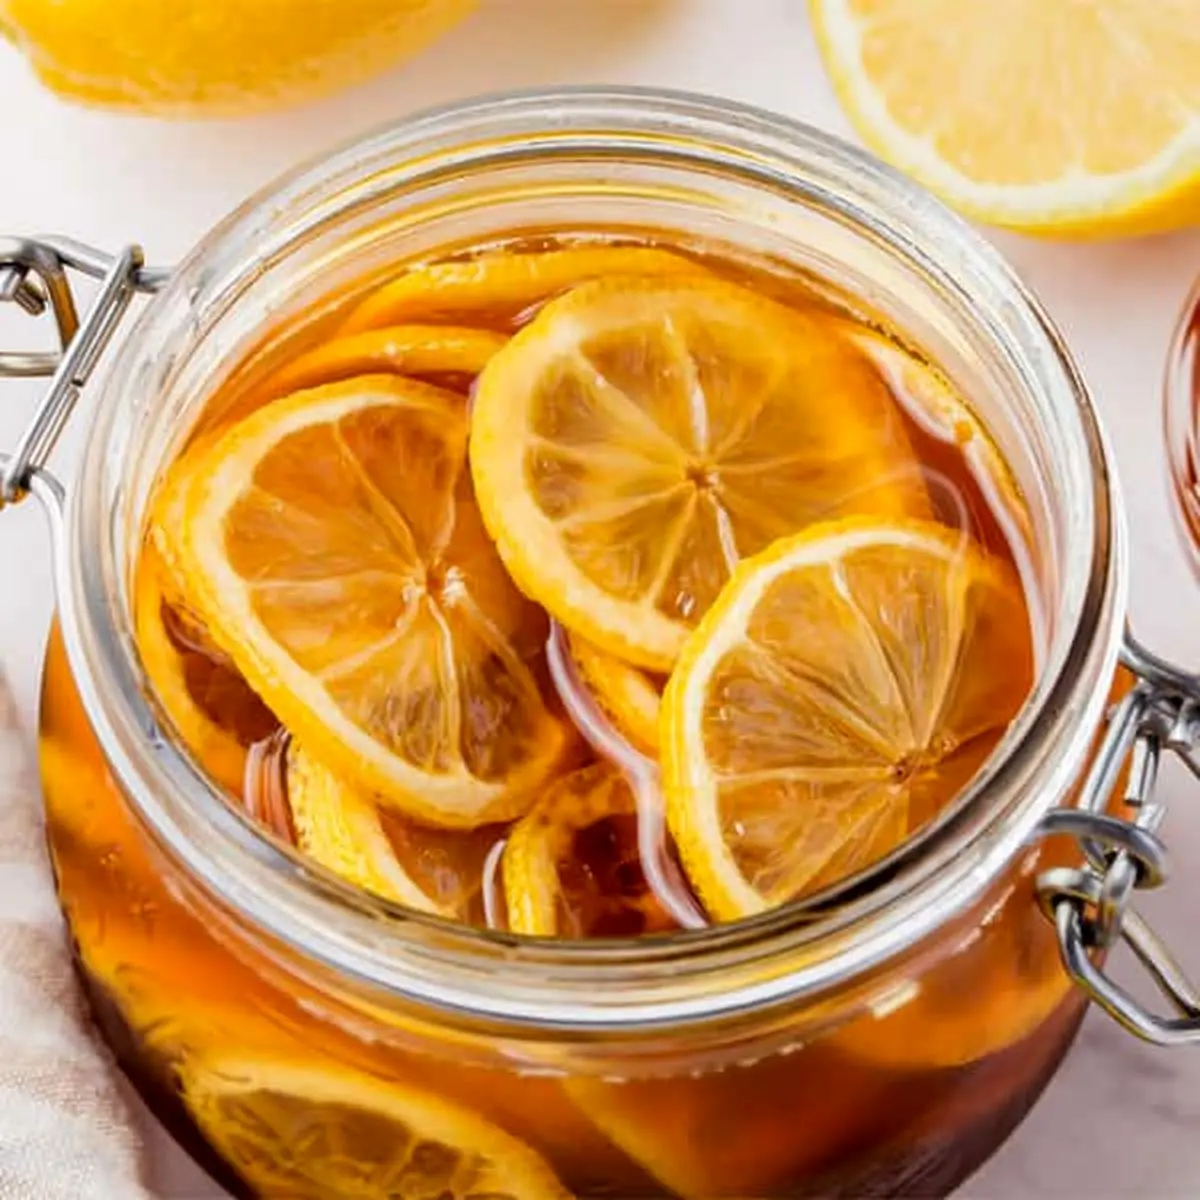 لیمو عسلی معجون معجزه گر سرما خوردگی رو این طوری درست کن